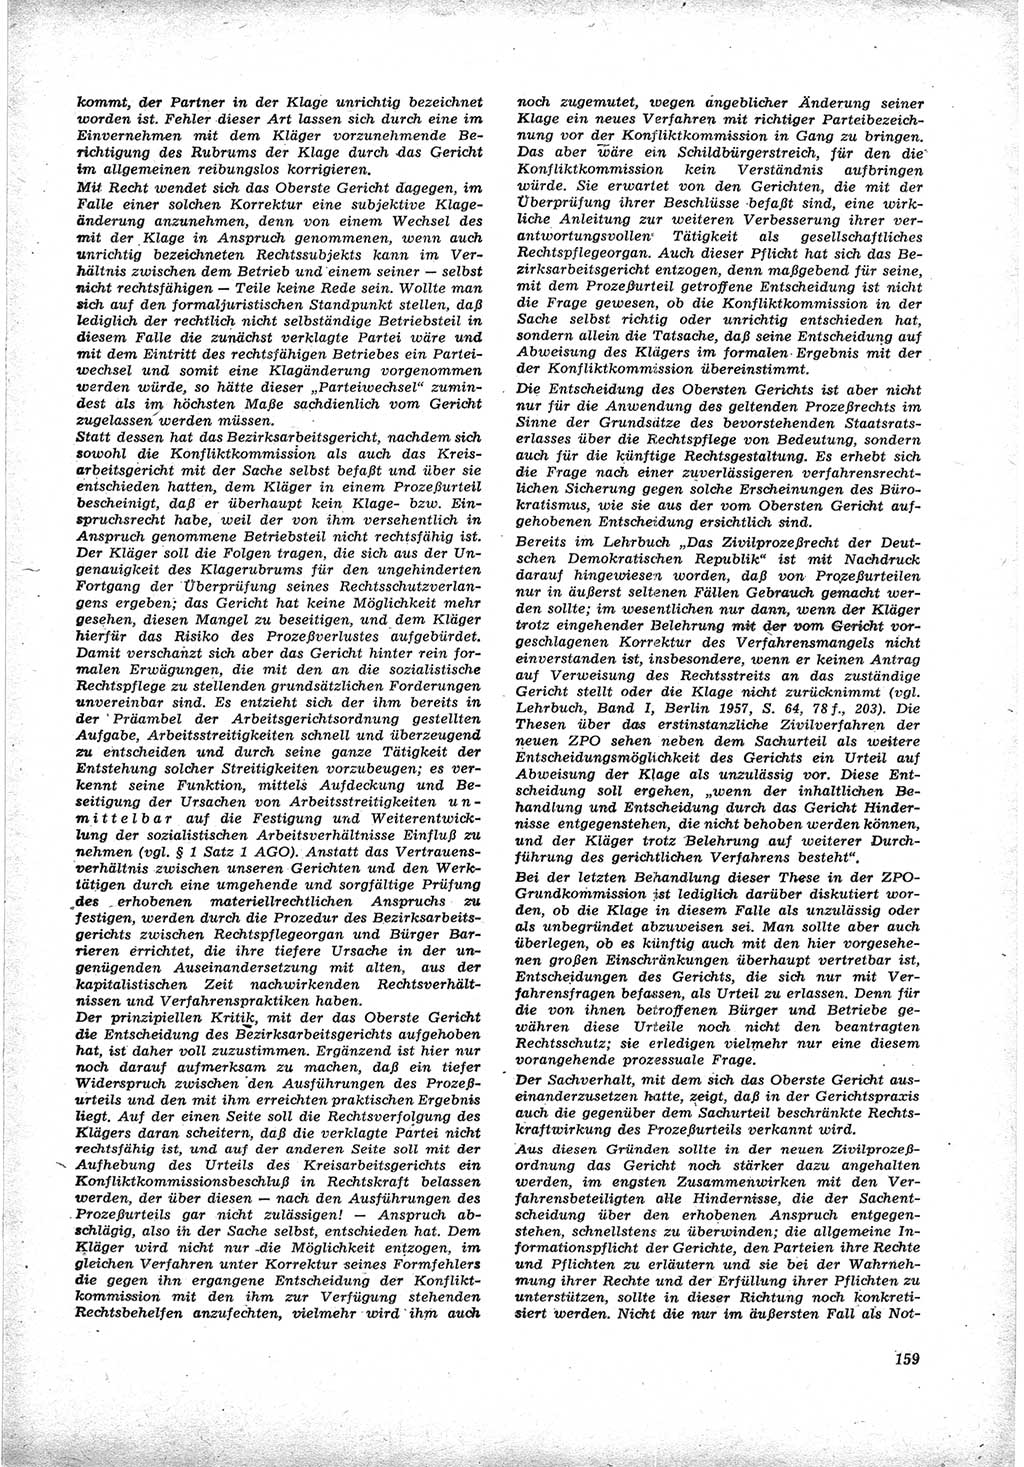 Neue Justiz (NJ), Zeitschrift für Recht und Rechtswissenschaft [Deutsche Demokratische Republik (DDR)], 17. Jahrgang 1963, Seite 159 (NJ DDR 1963, S. 159)